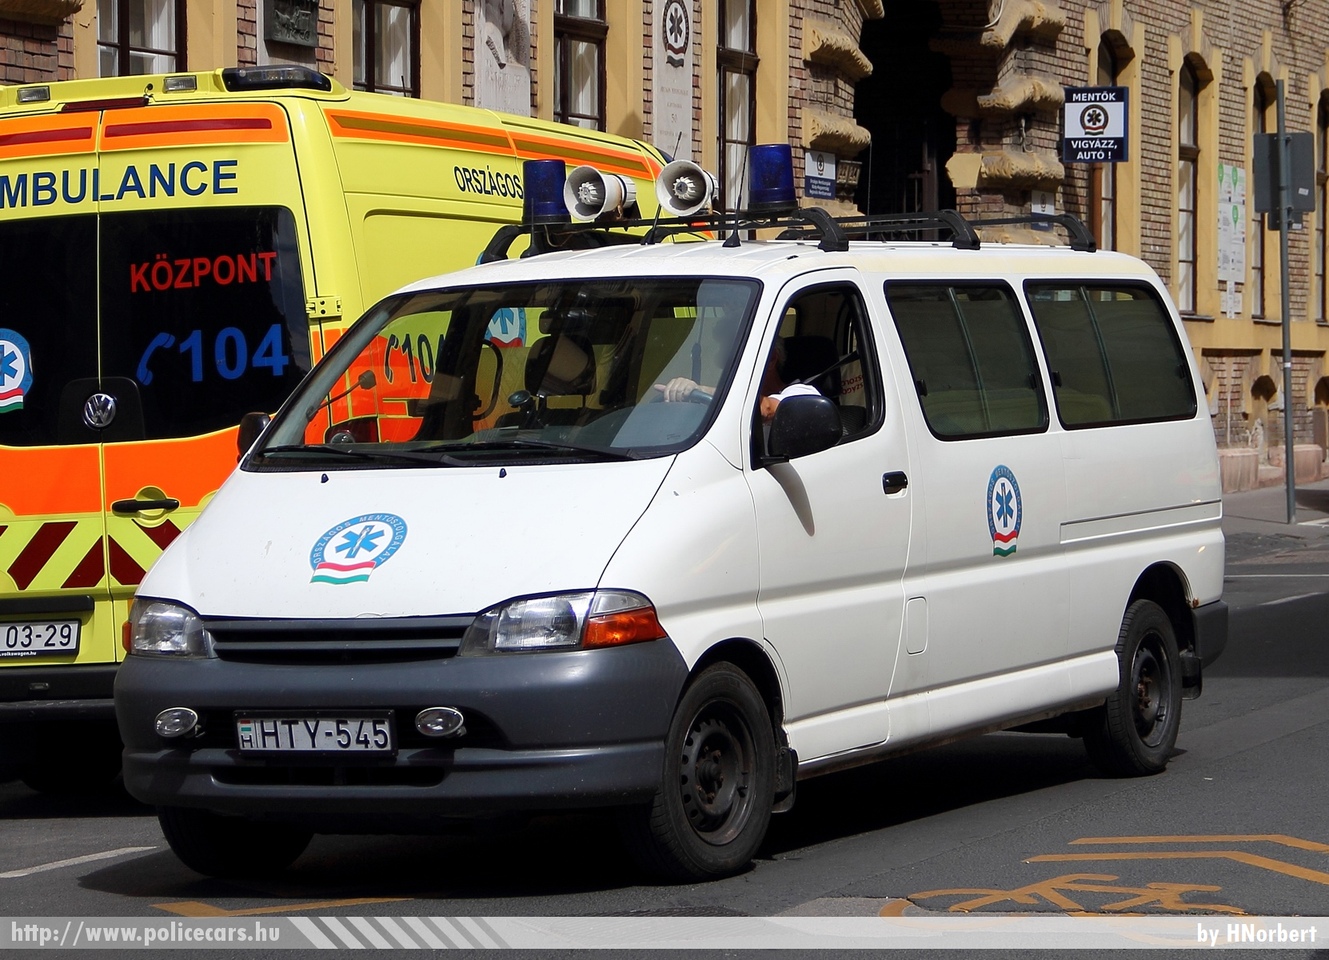 Toyota Hiace, Országos Mentõszolgálat, fotó: HNorbert
Keywords: magyar Magyarország mentő mentőautó OMSZ Hungary hungarian ambulance HTY-545